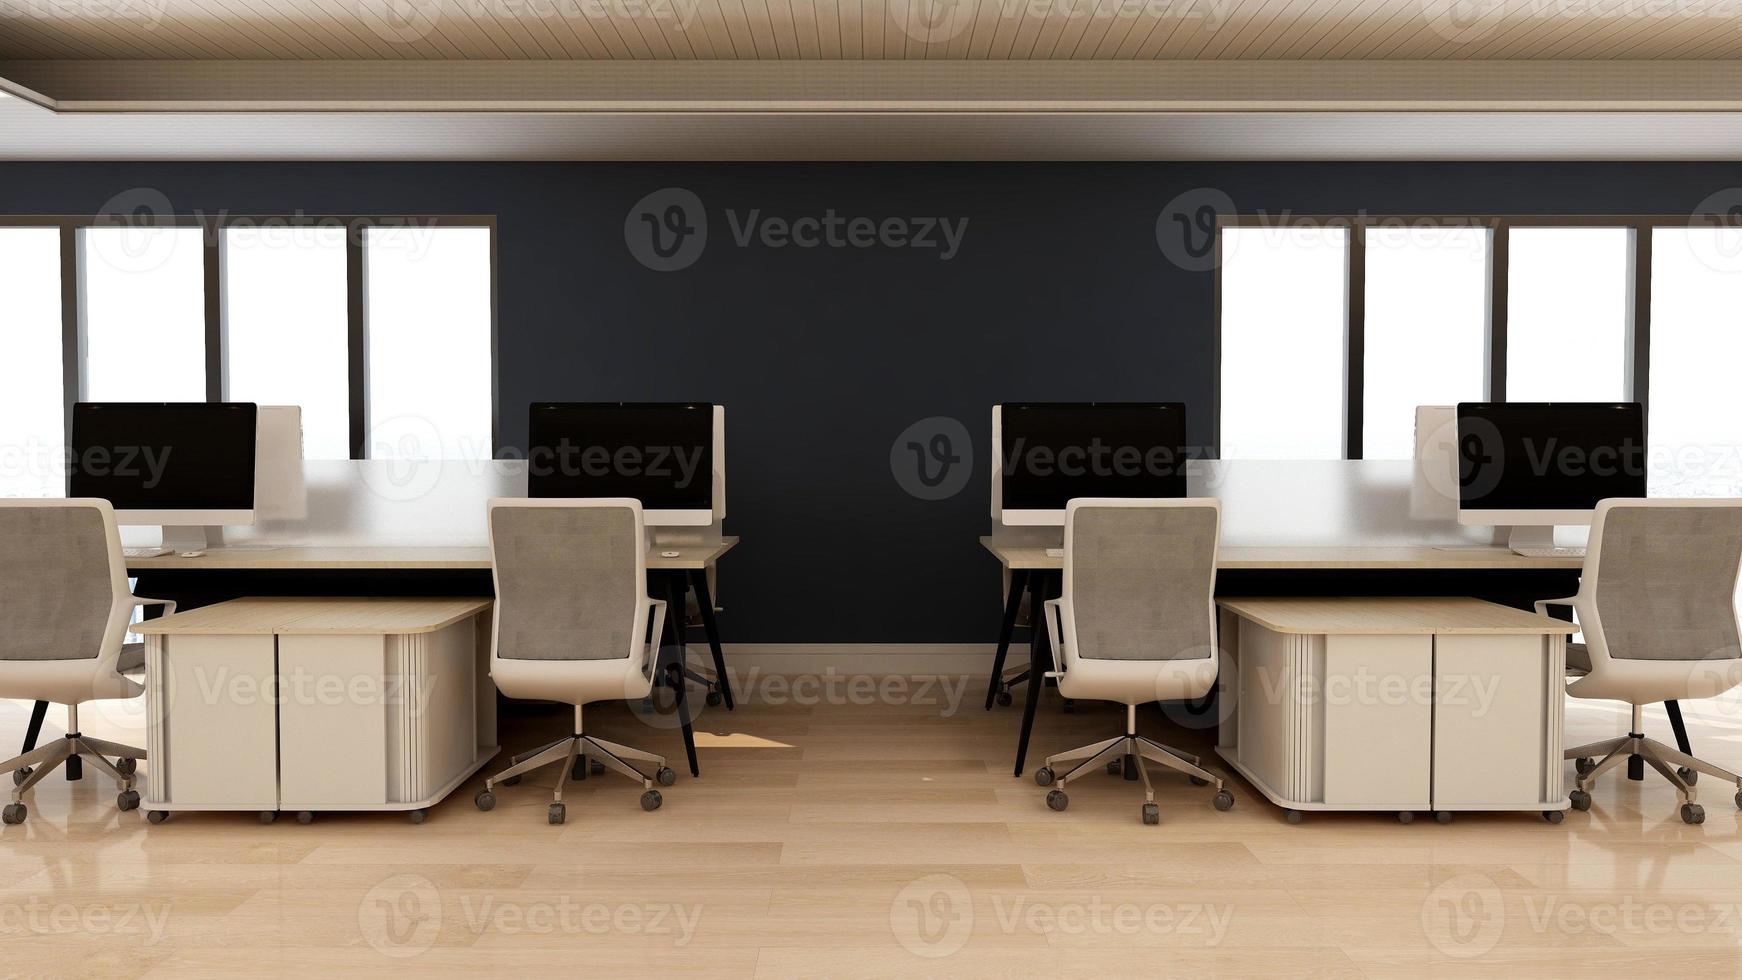 diseño de interiores de oficina minimalista moderno y oscuro en 3d - área de trabajo de espacio abierto foto